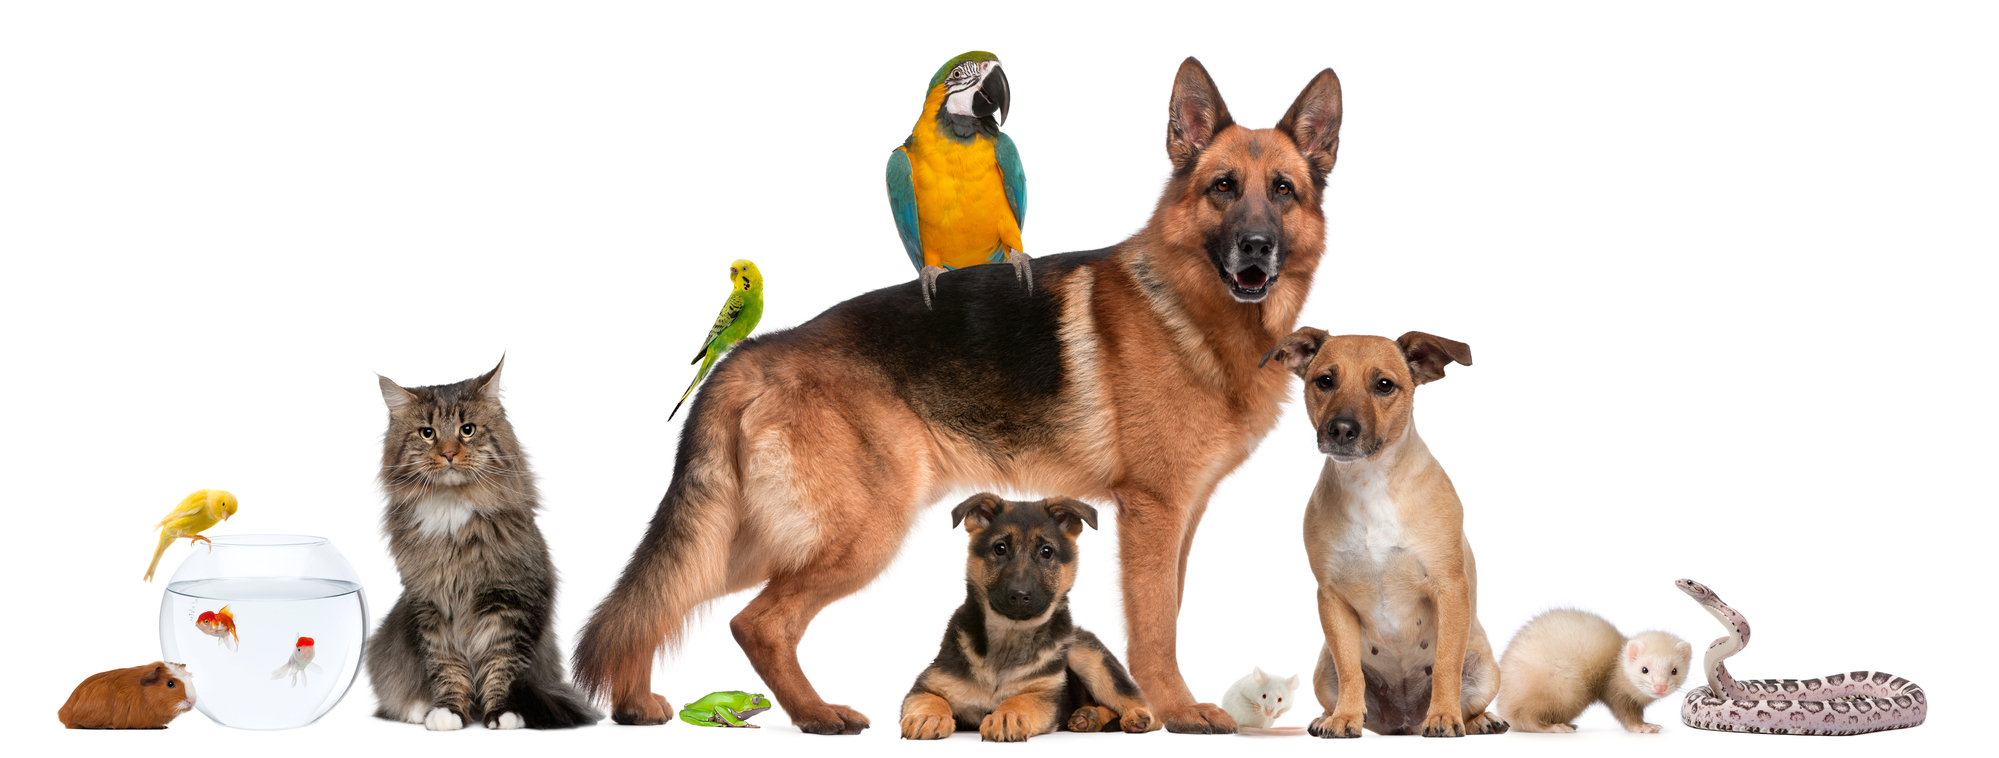 Natural Pet Care Articles hero